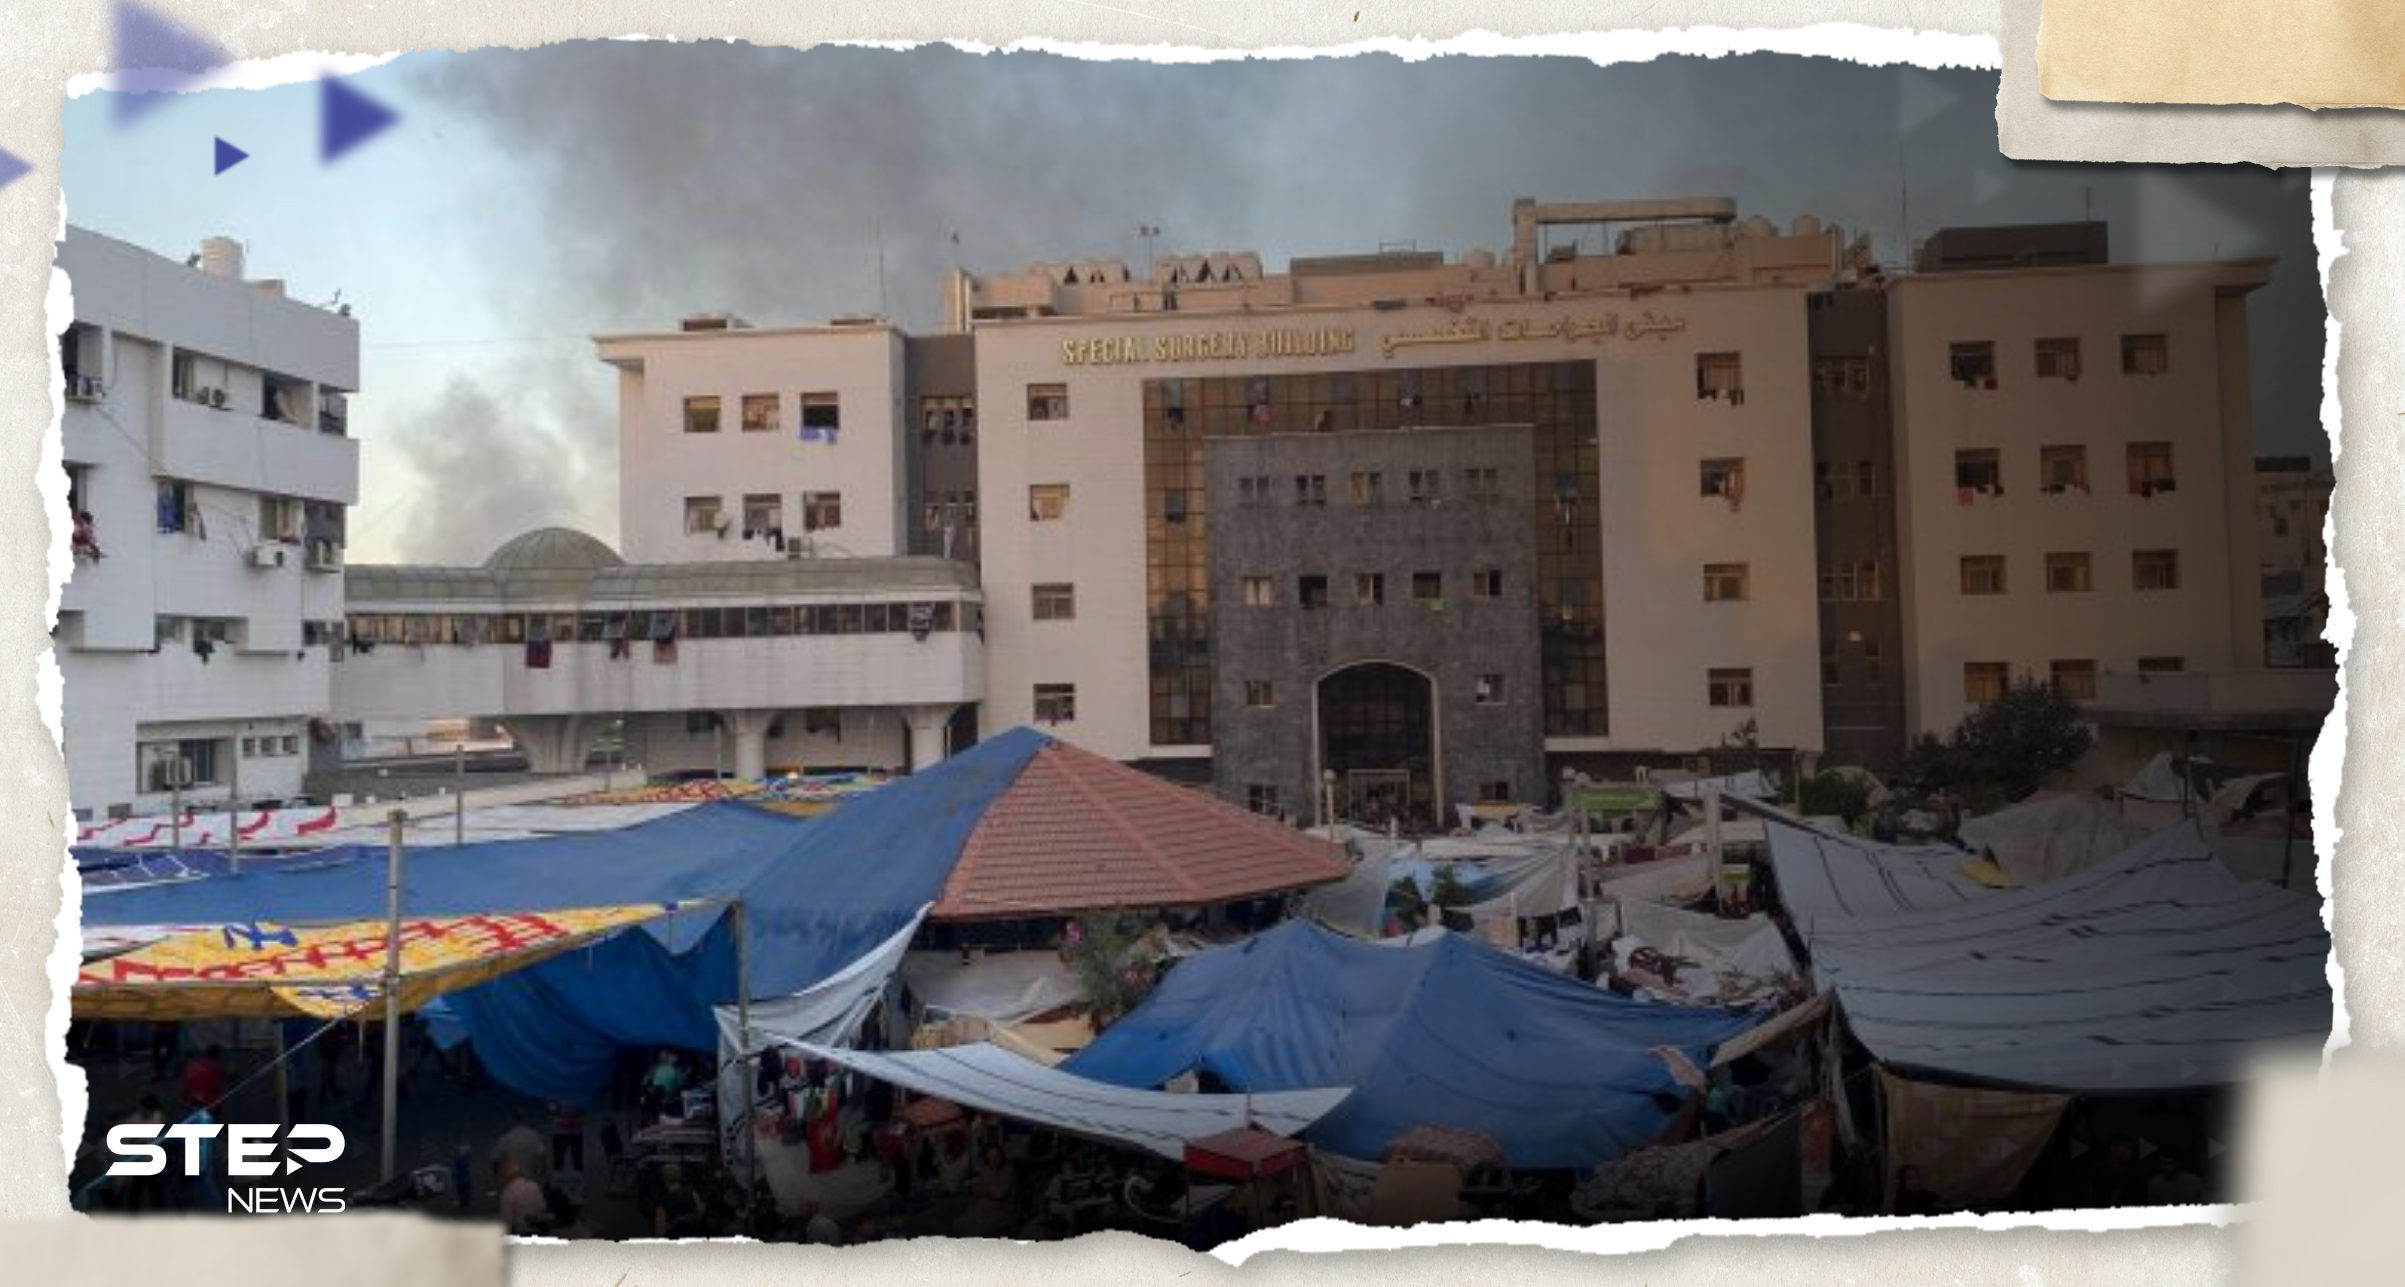 "ساعات تفصلنا عن الموت".. مدير مستشفى الشفاء بغزة يطلق النداء الأخير